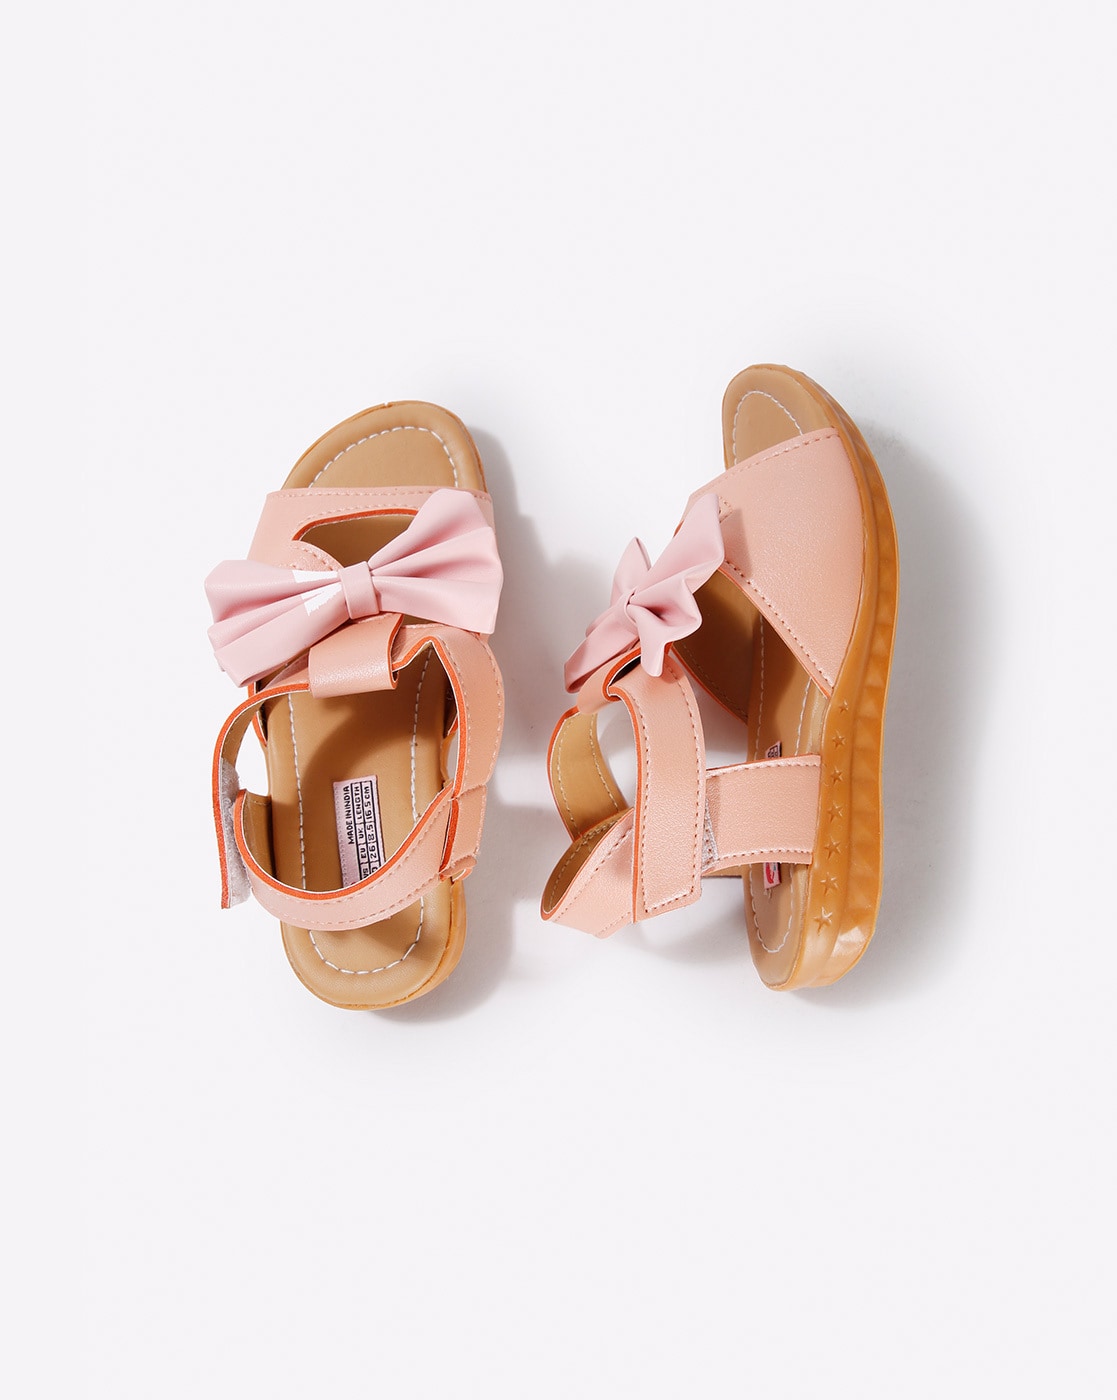 peach sandals uk